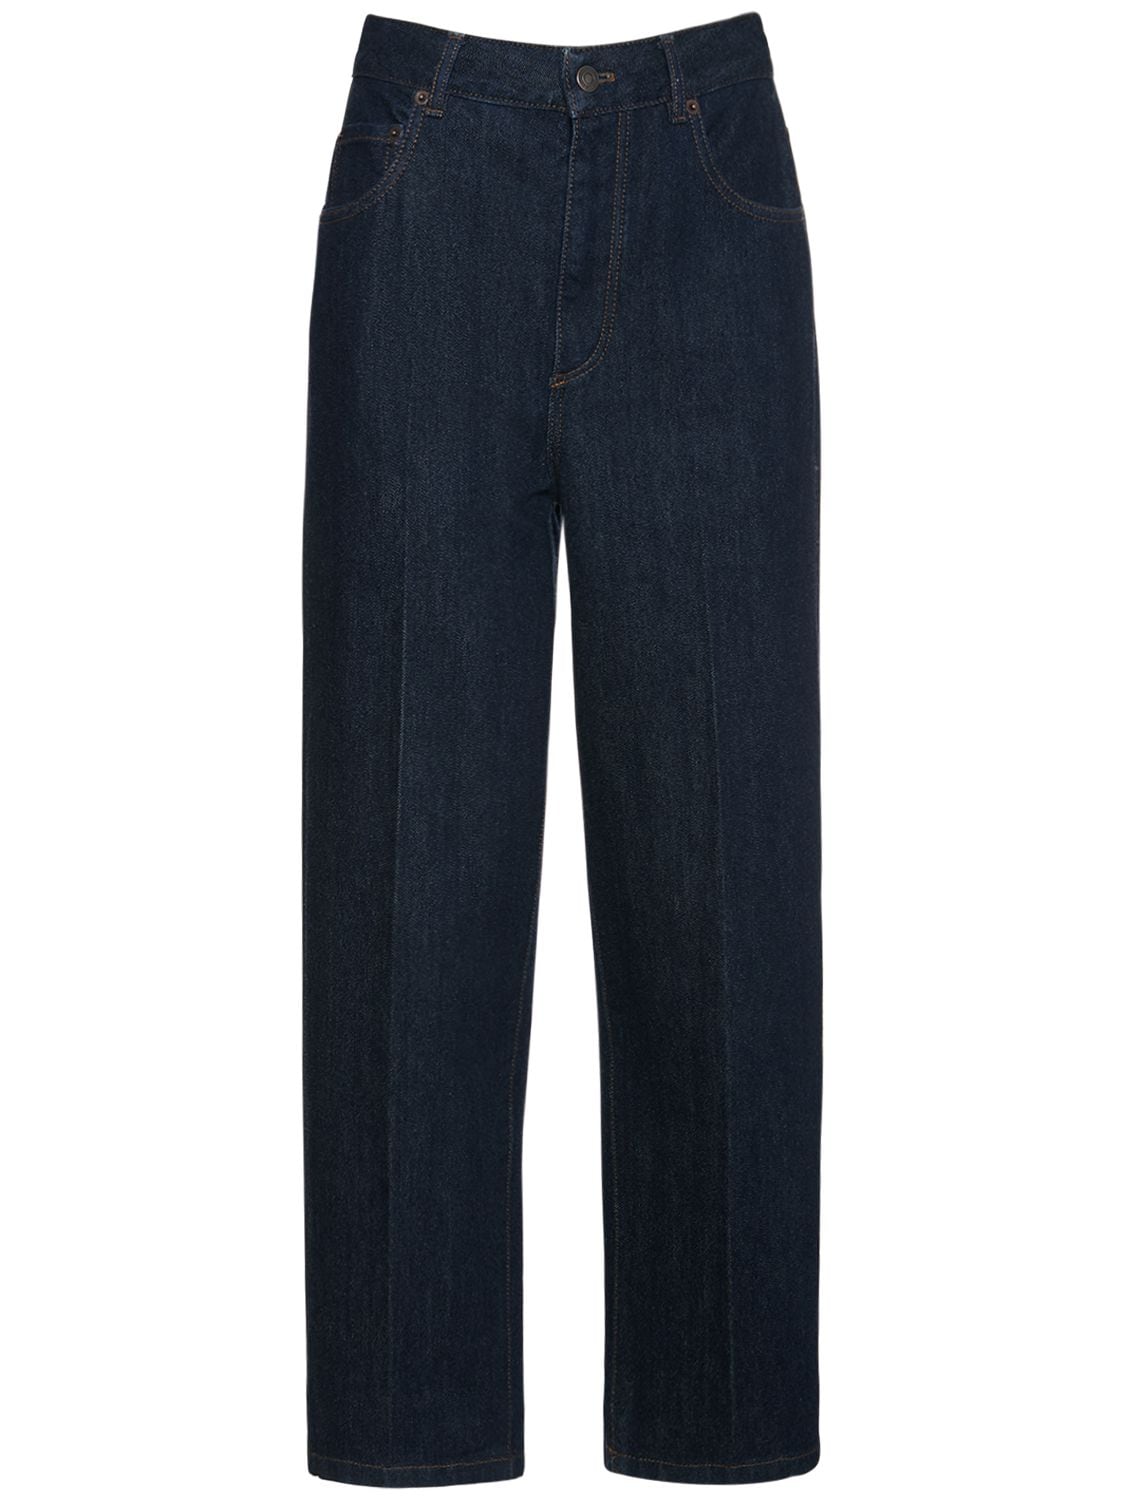 Madley Cotton & Cashmere Denim Jeans